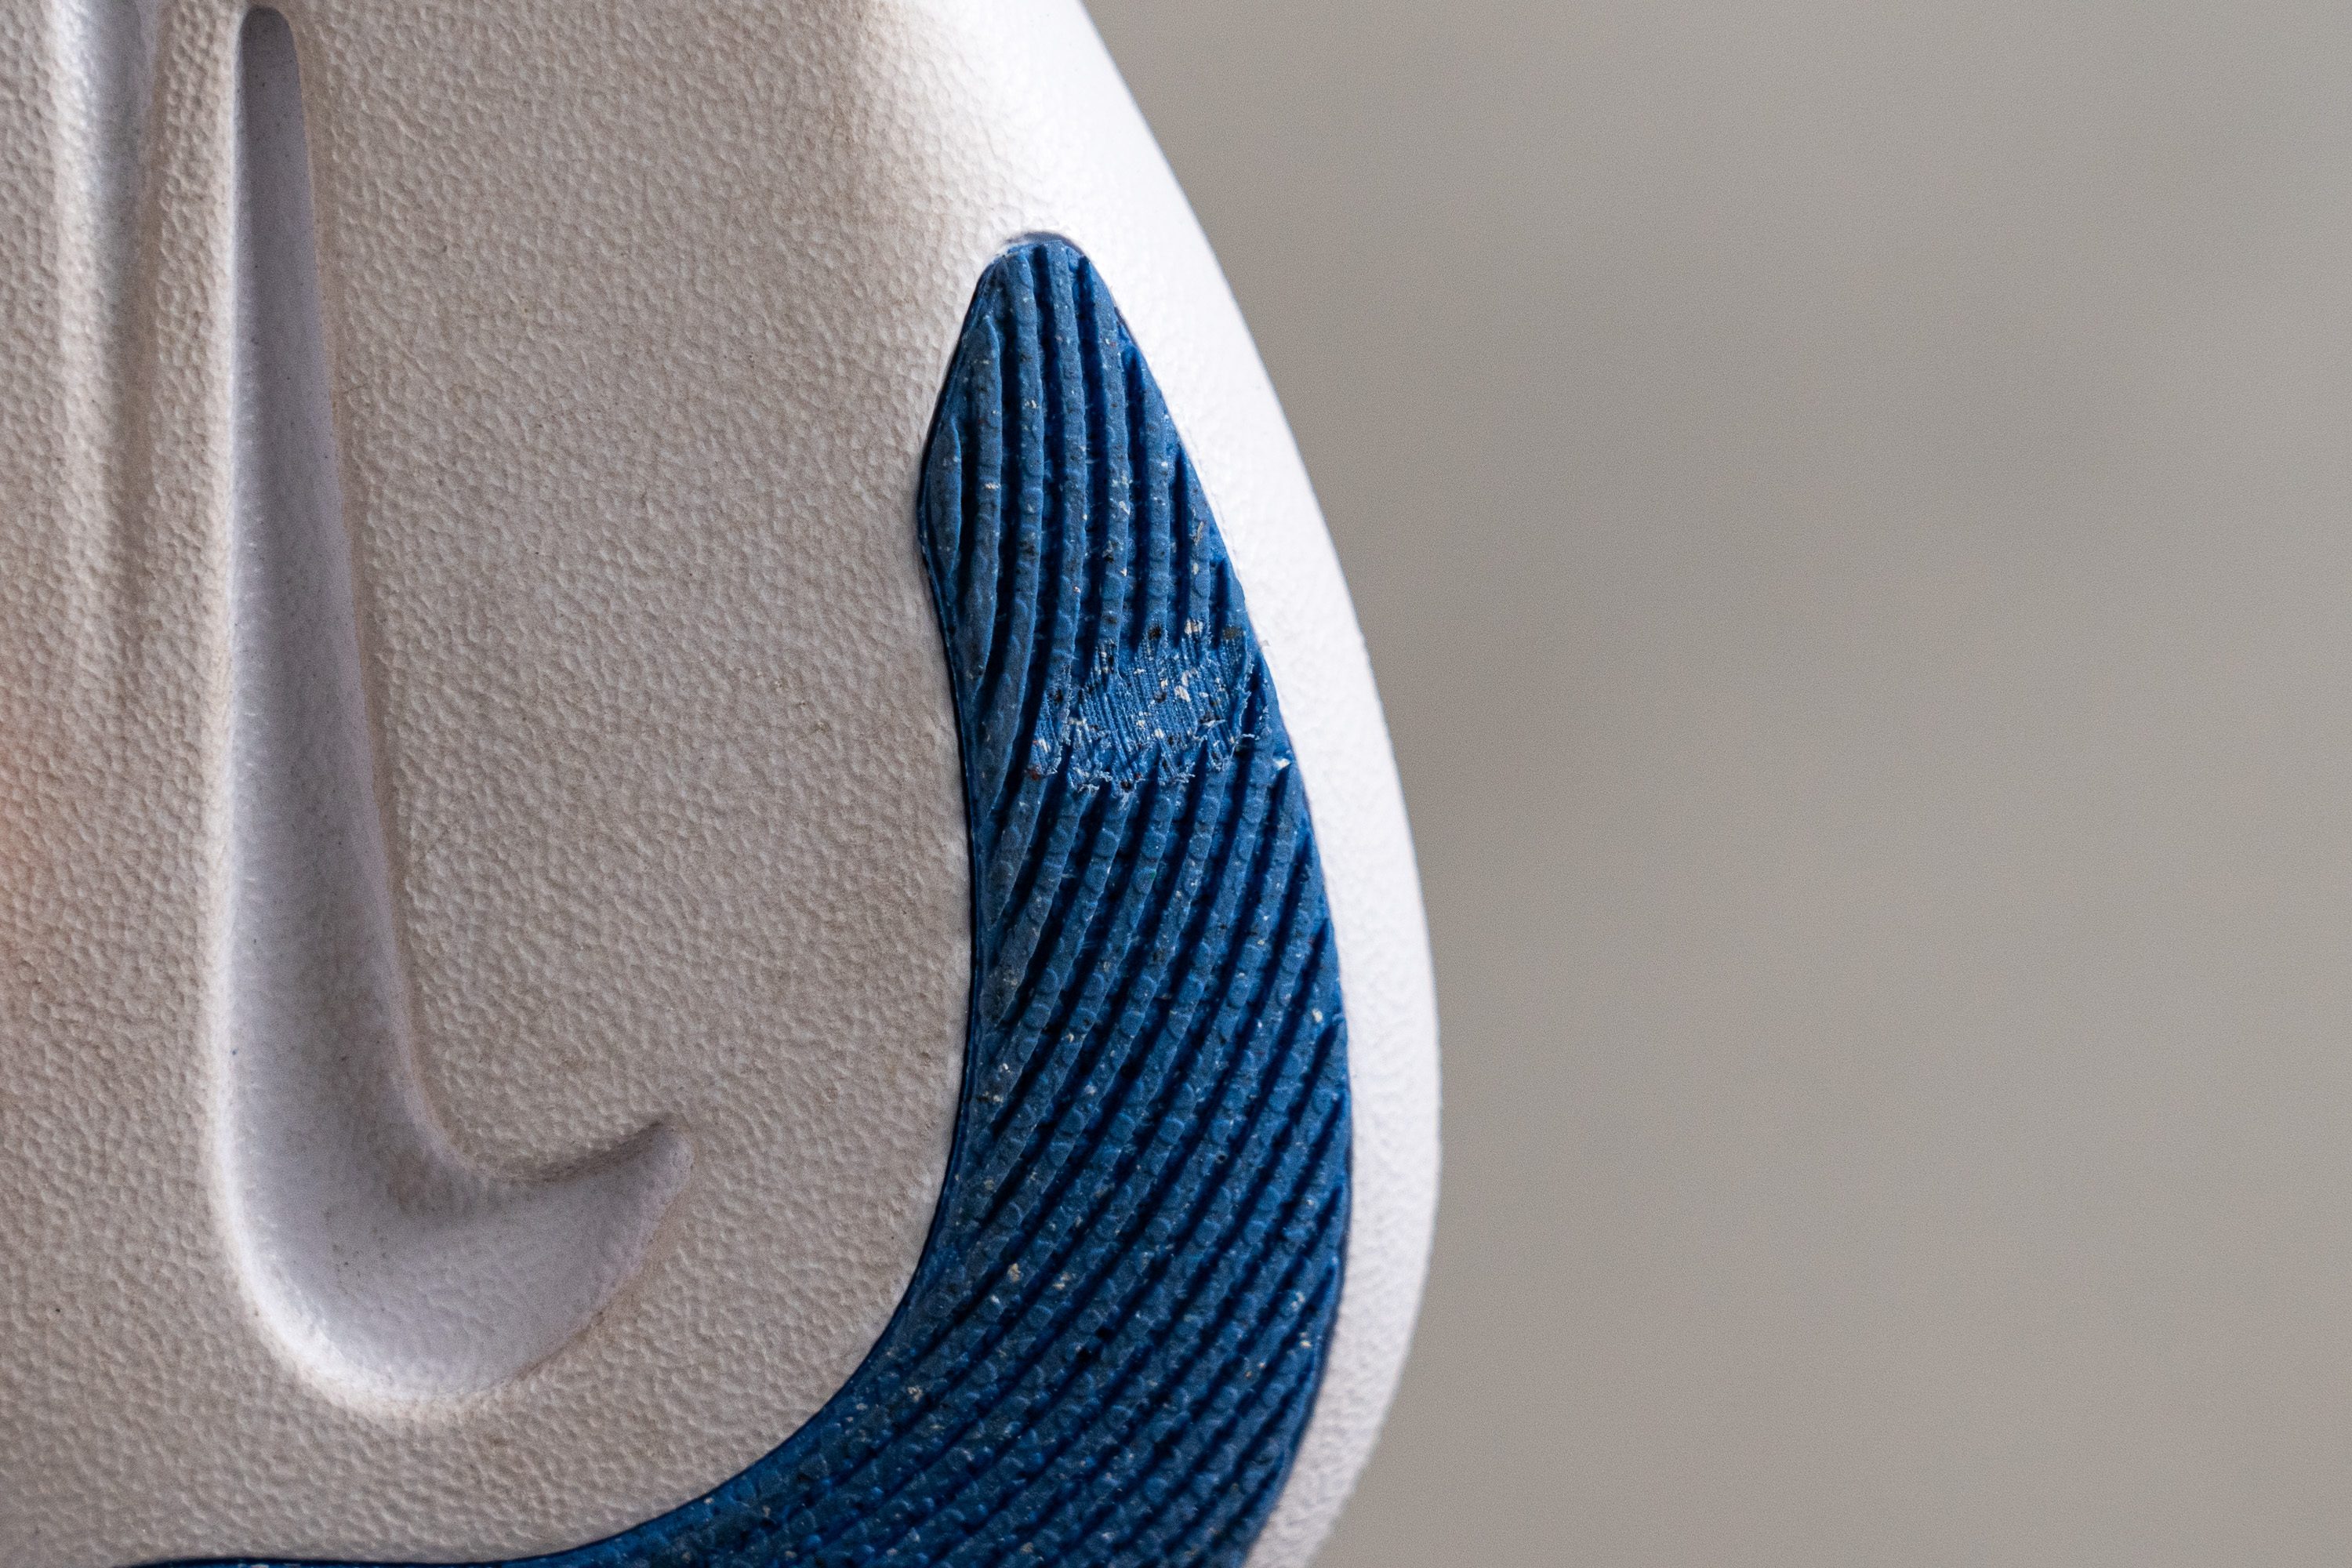 Nike Air Max 1 Premium Mini Swoosh Blue Outsole durability 2